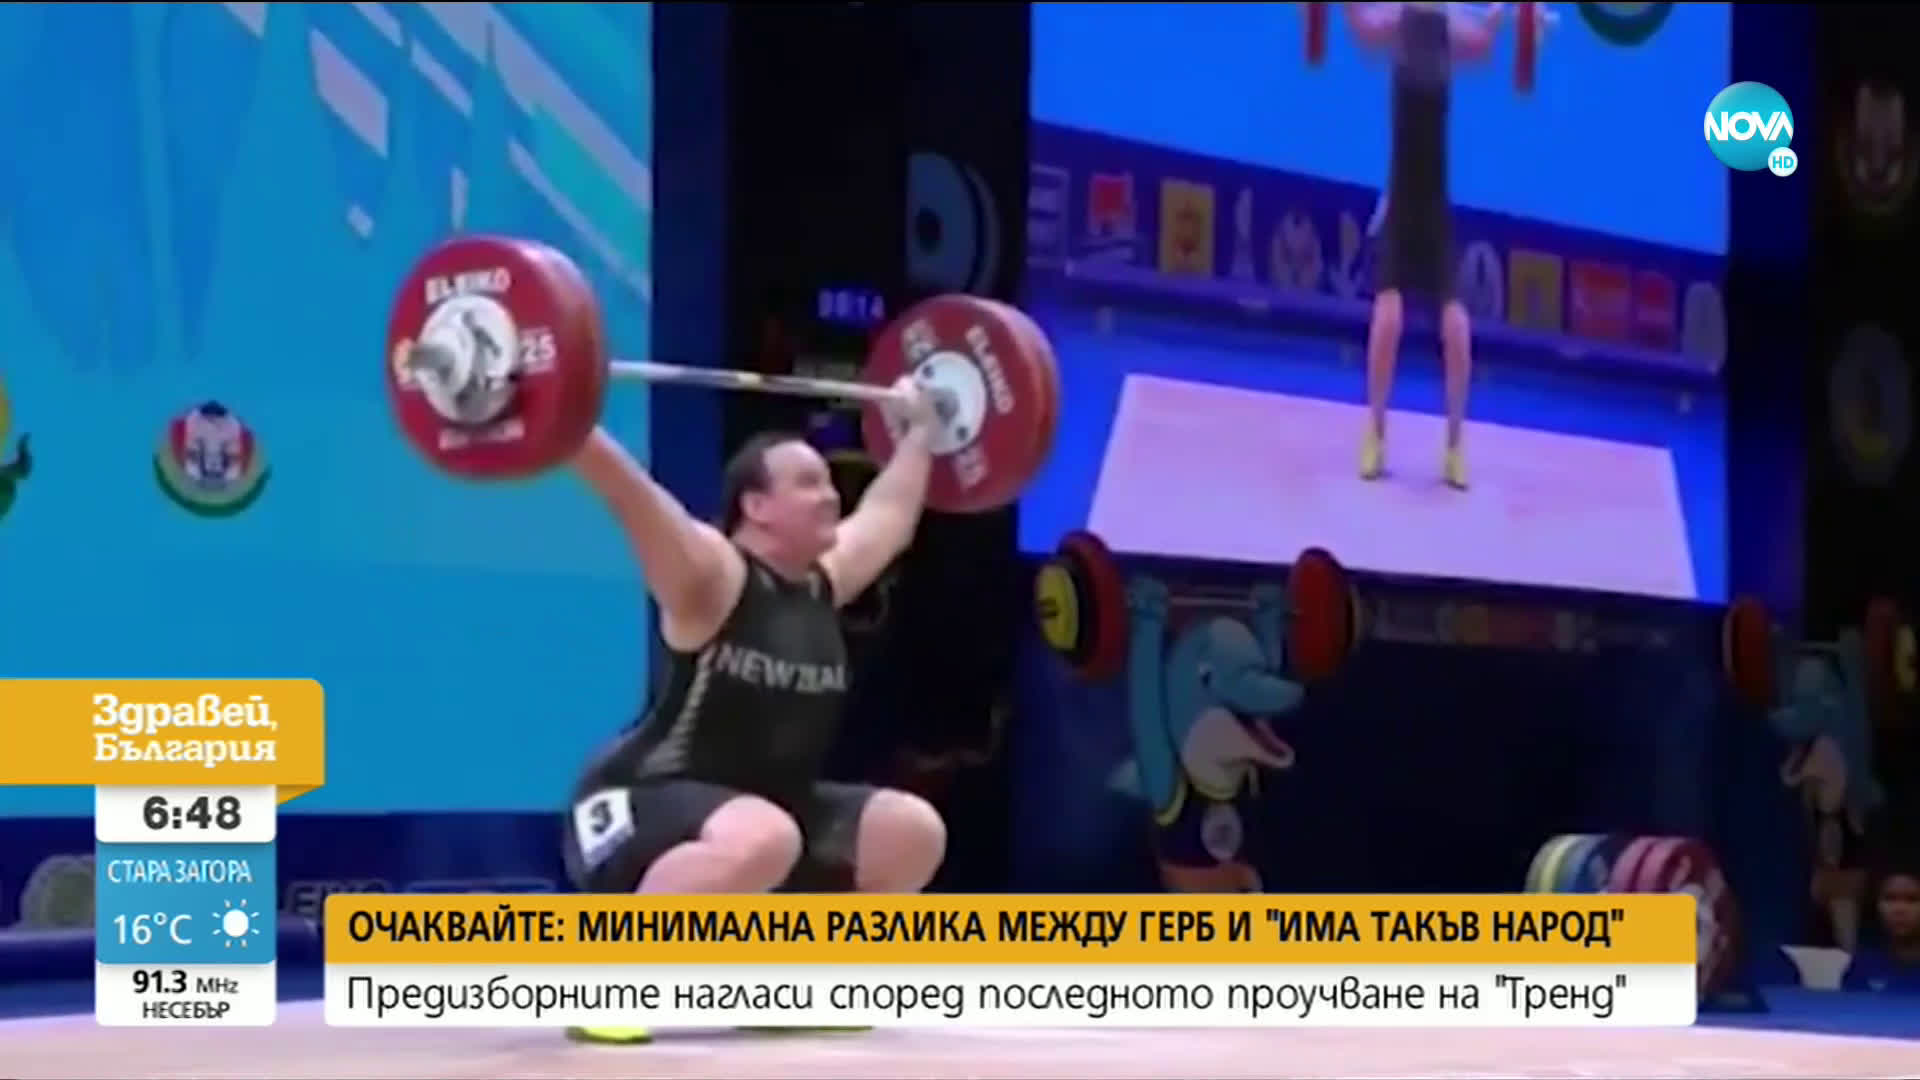 Tранссексуален щангист ще се състезава при жените на Олимпиадата (ВИДЕО+СНИМКИ)